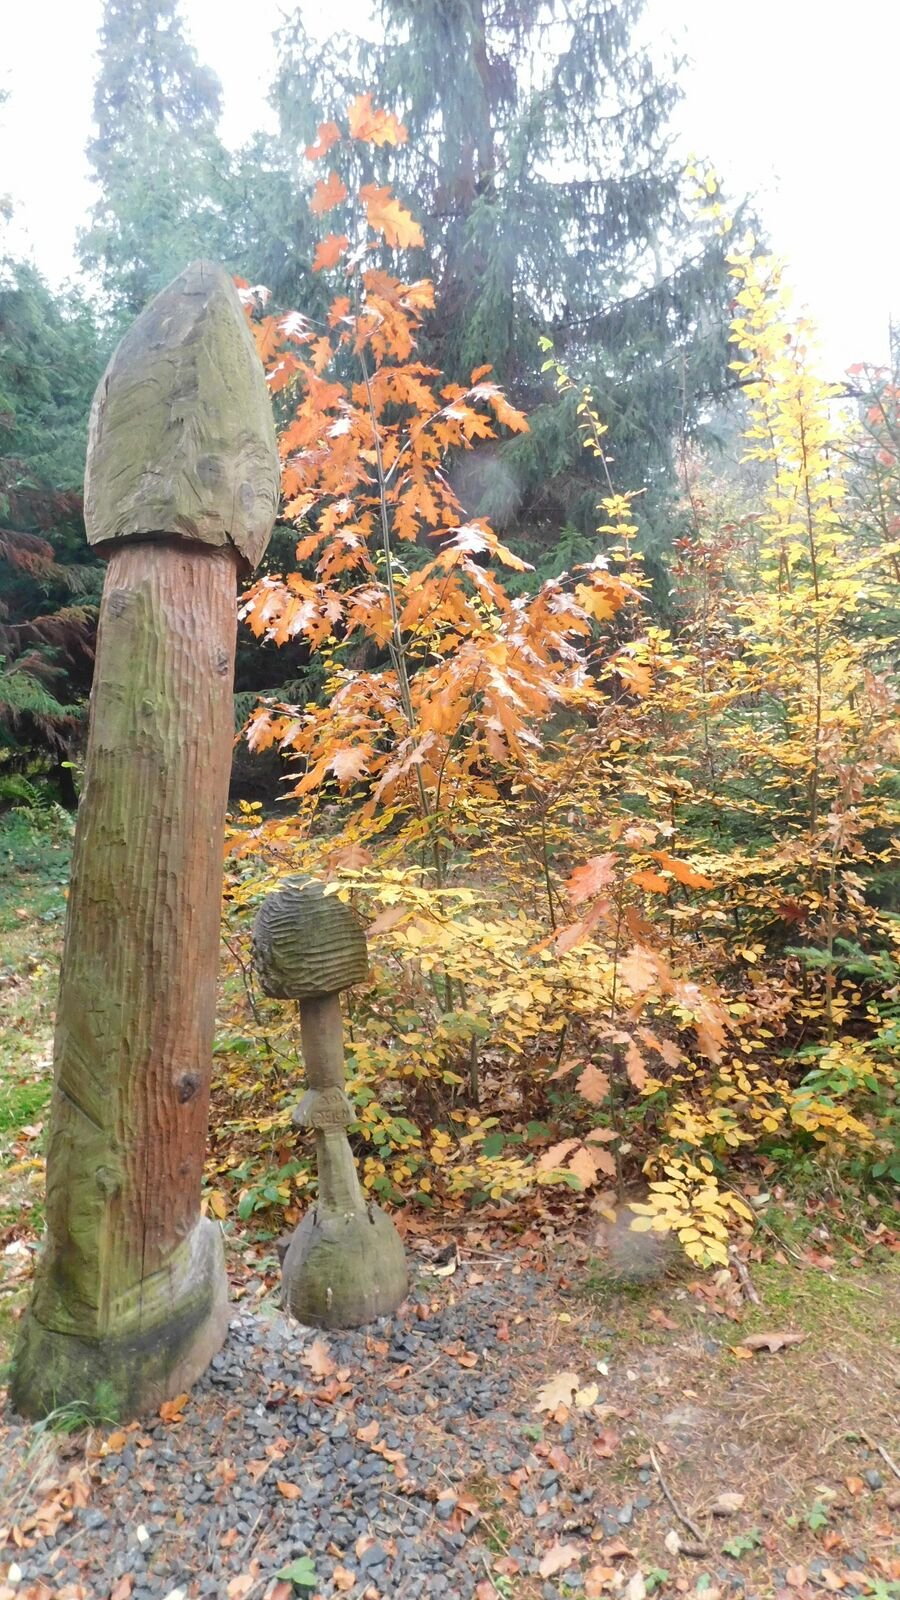 Arboretum Školního lesního podniku Masarykův les v Křtinách. V areálu se nachází na 800 druhů dřevin z celého světa.